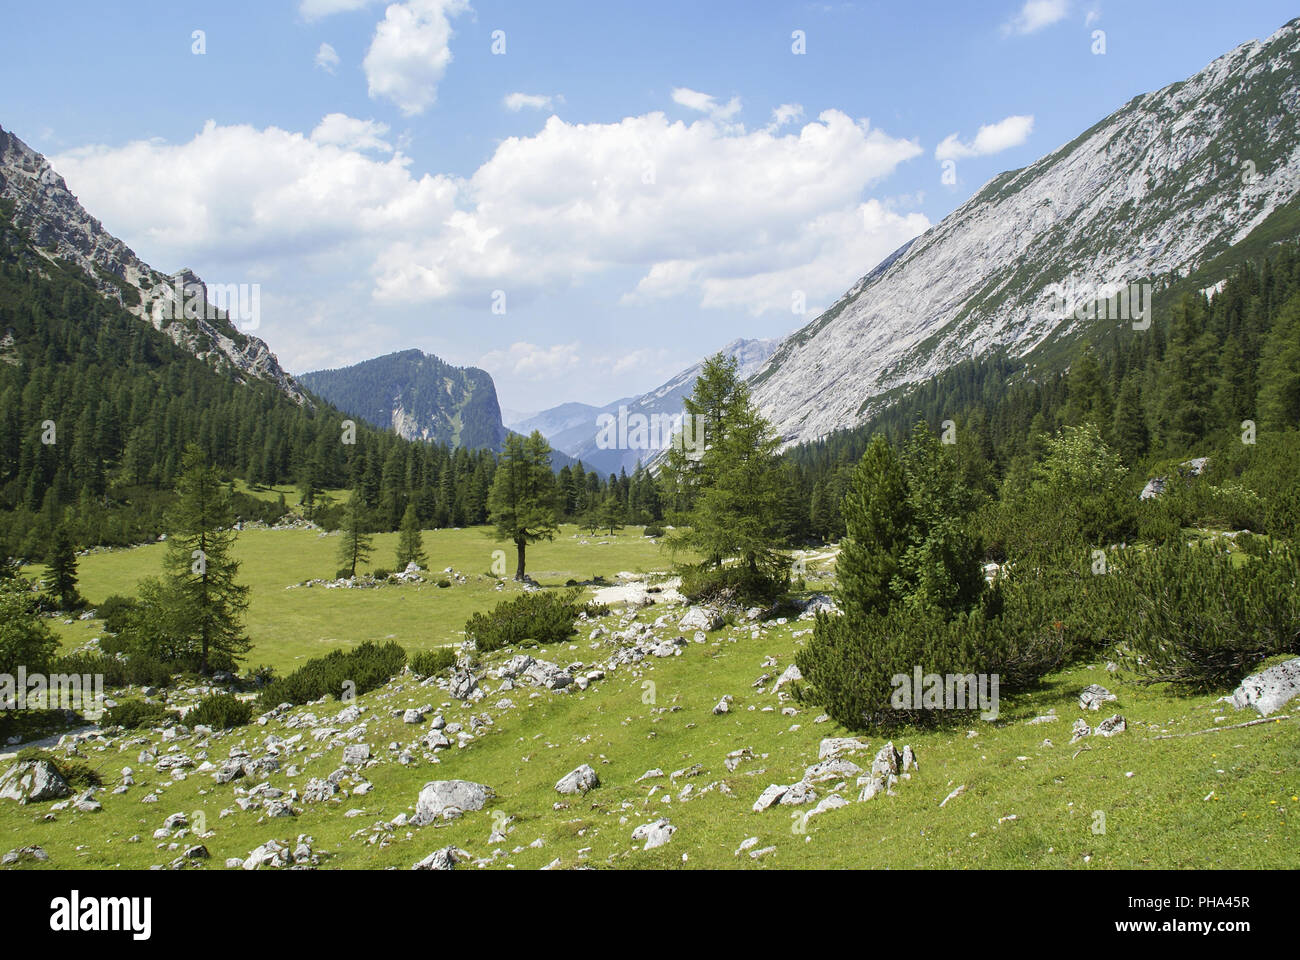 Hitchhiking in the Karwendel Mountains, Tyrol, Austria Stock Photo